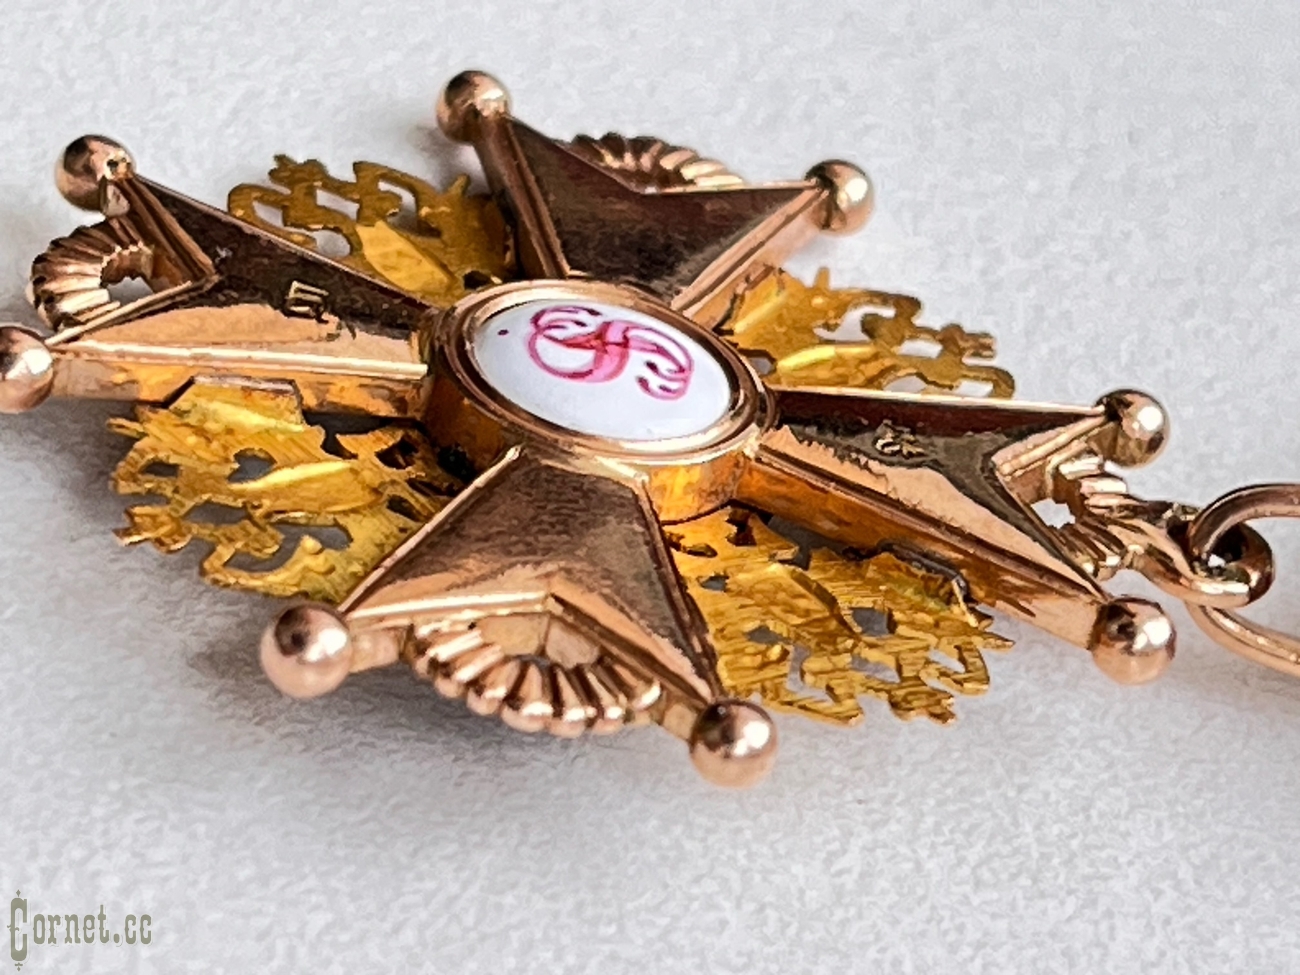 Орден Св.Станислава 3-ей степени "IK" 1868 год